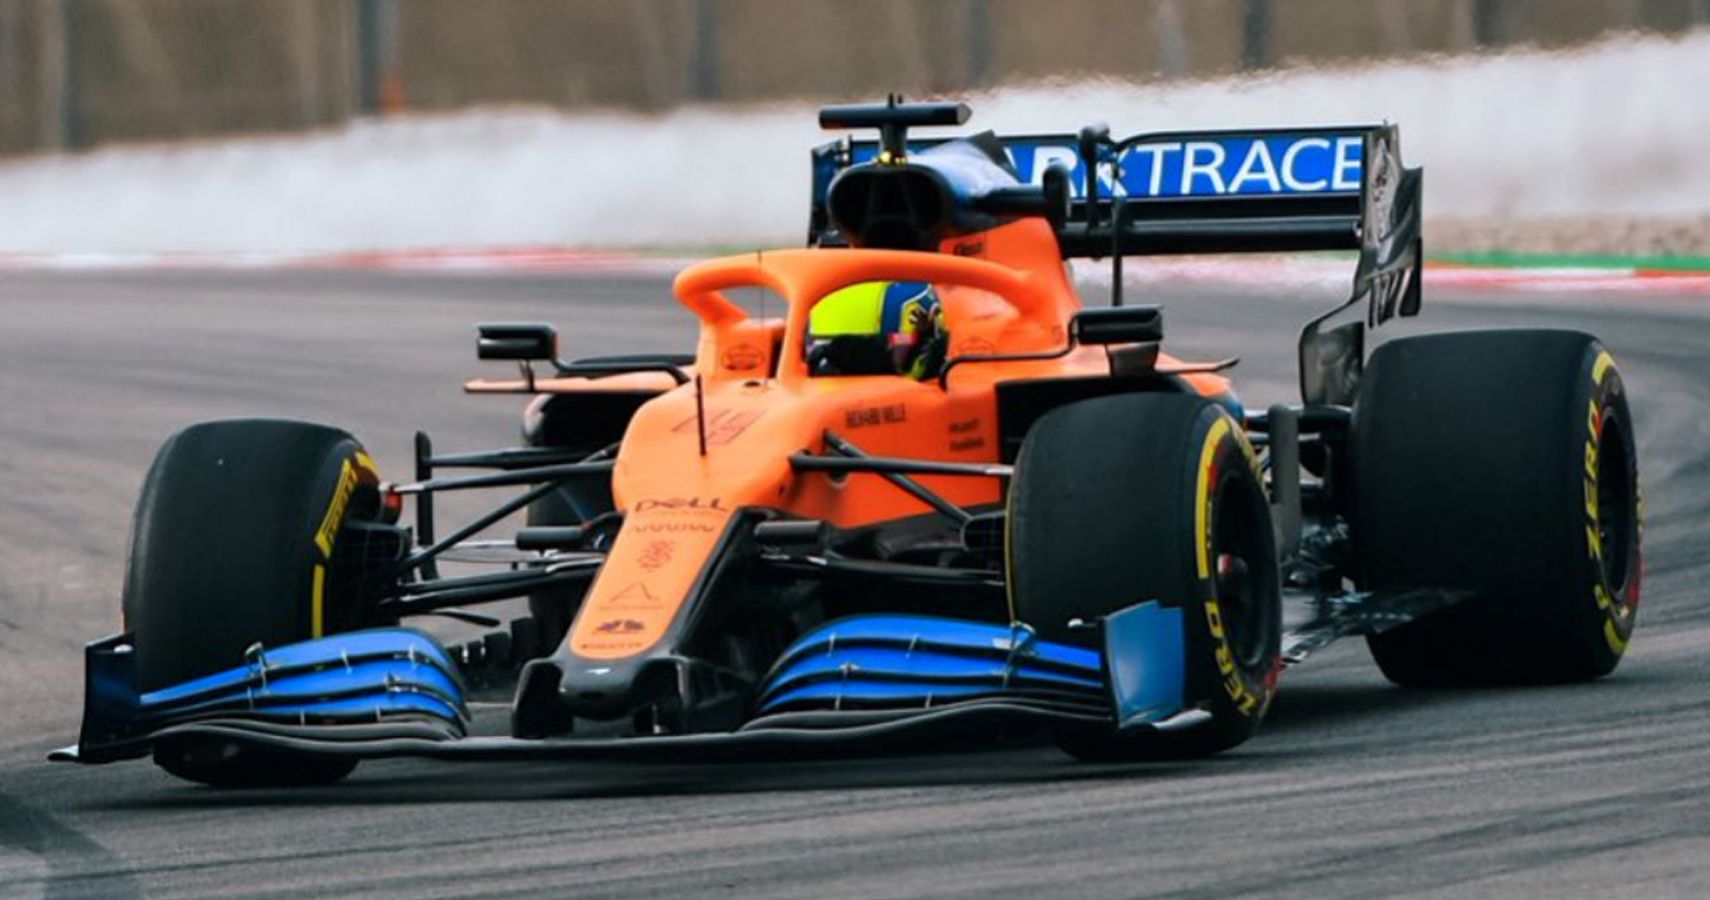 F1 racer Lando Norris on track in McLaren vehicle